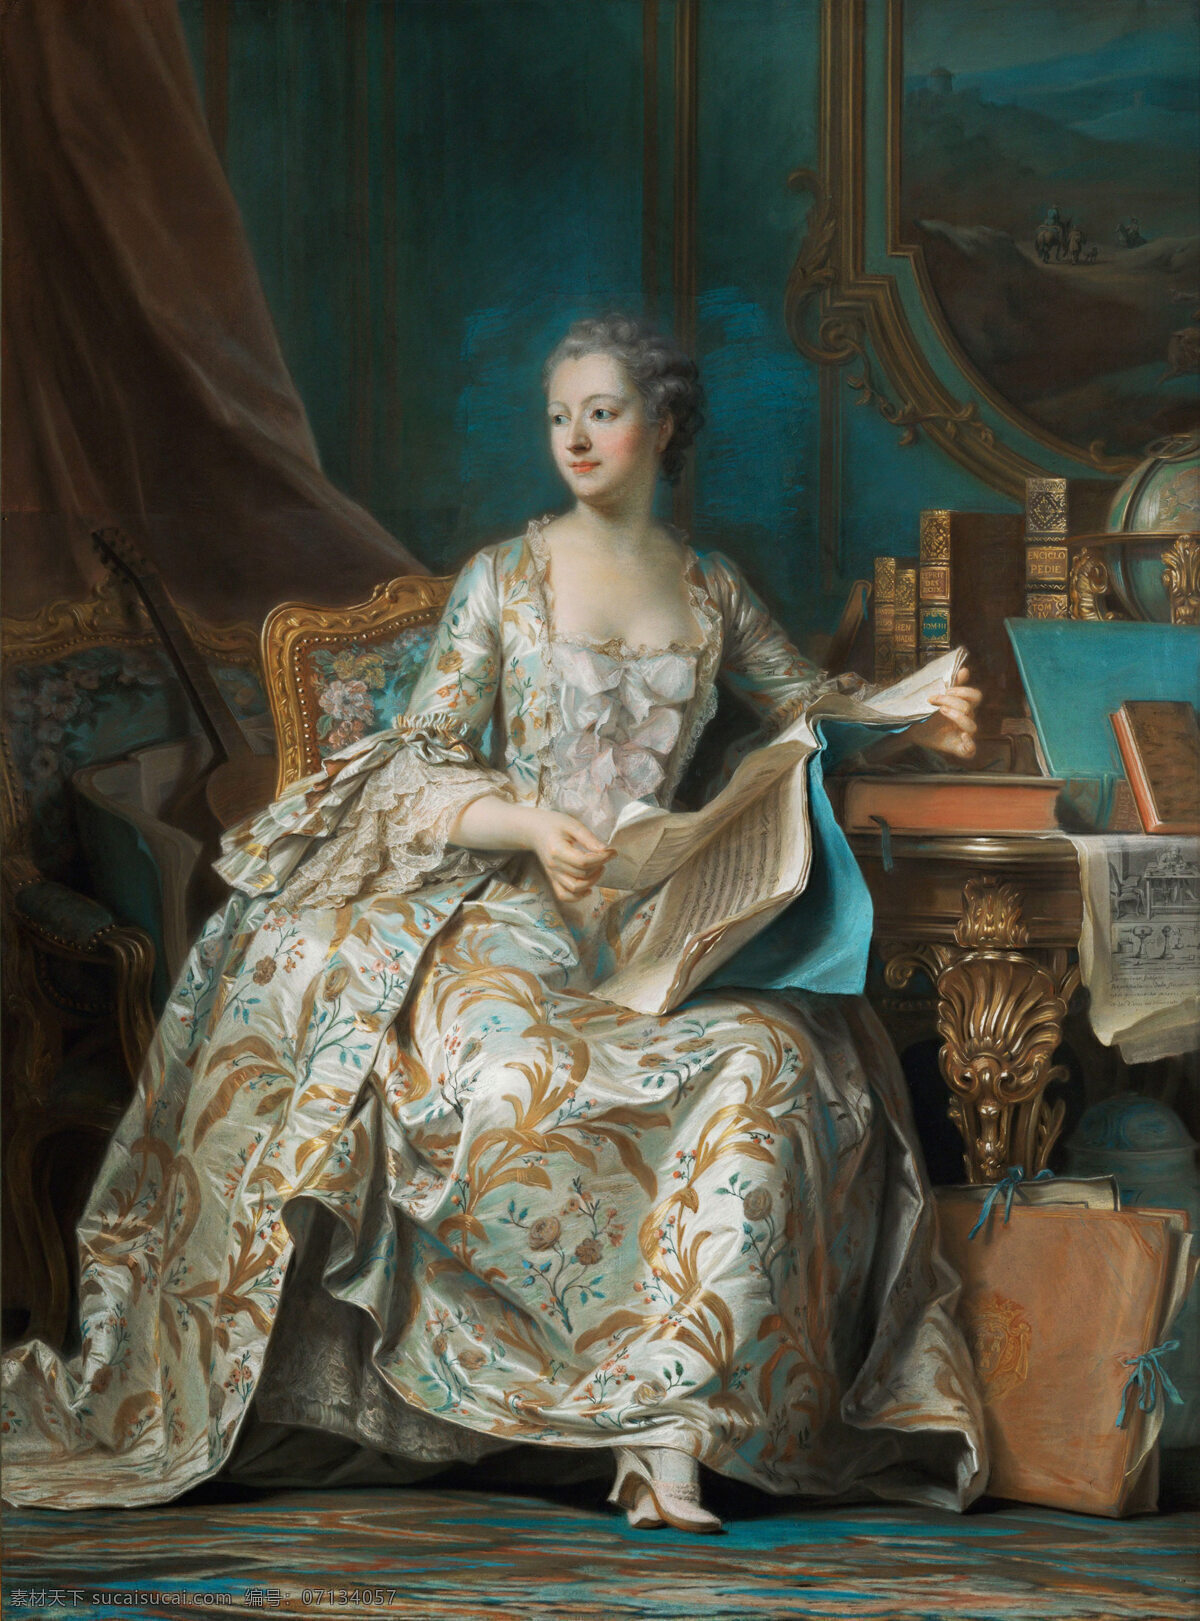 古典肖像油画 唯美 古典技法 花瓶 蕾丝 女画家 伯爵帽子 奢华 宫廷 坐姿 绘画书法 文化艺术